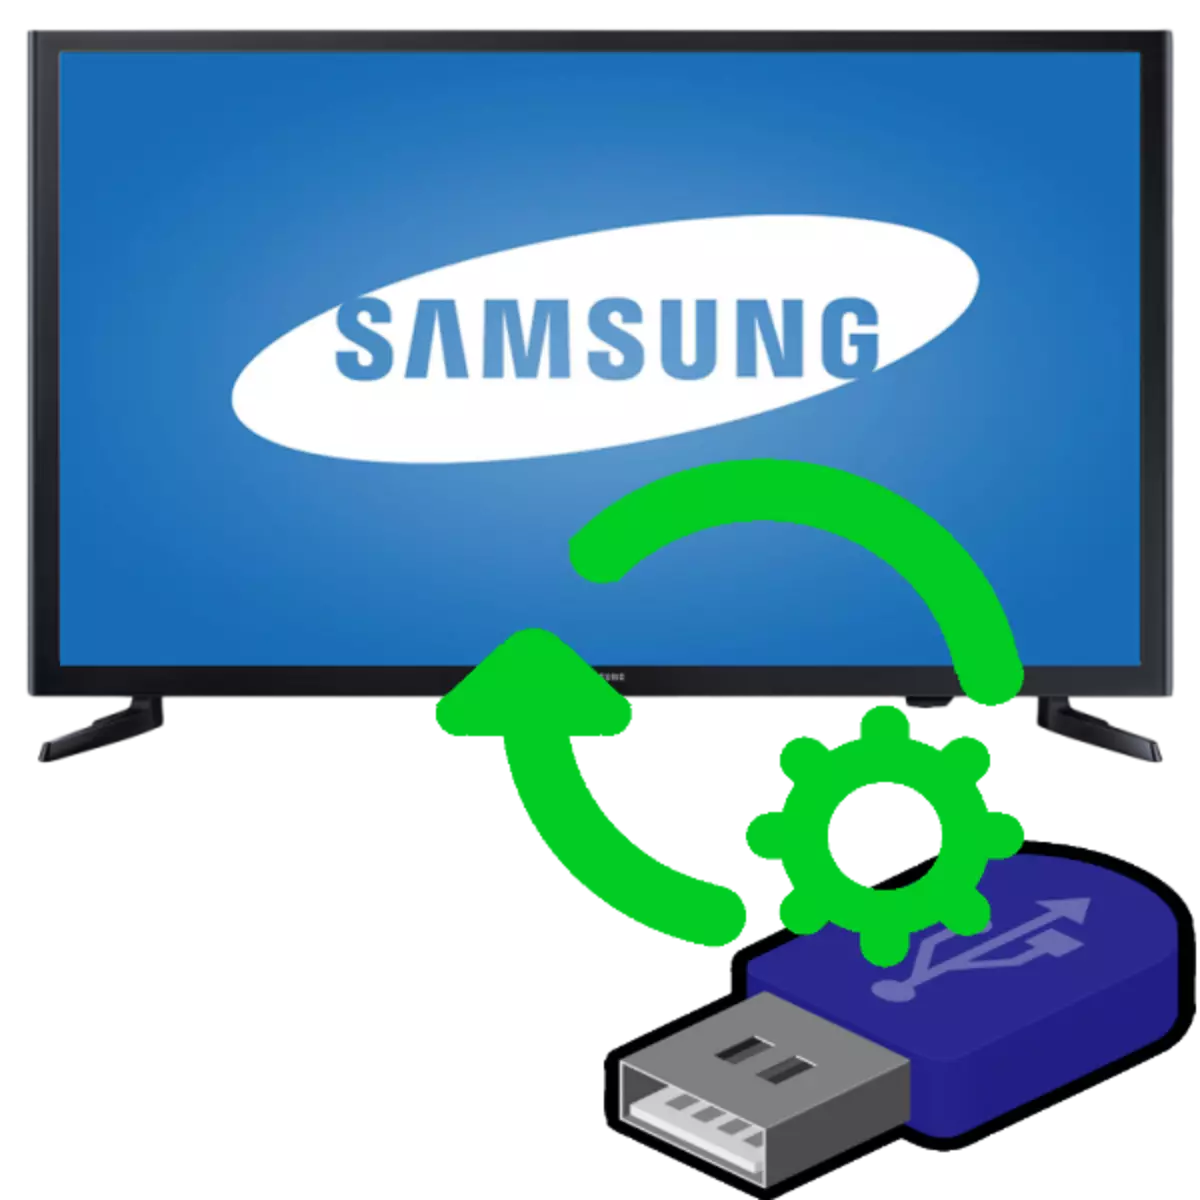 Hoe om Samsung TV te werk deur middel van 'n flash drive